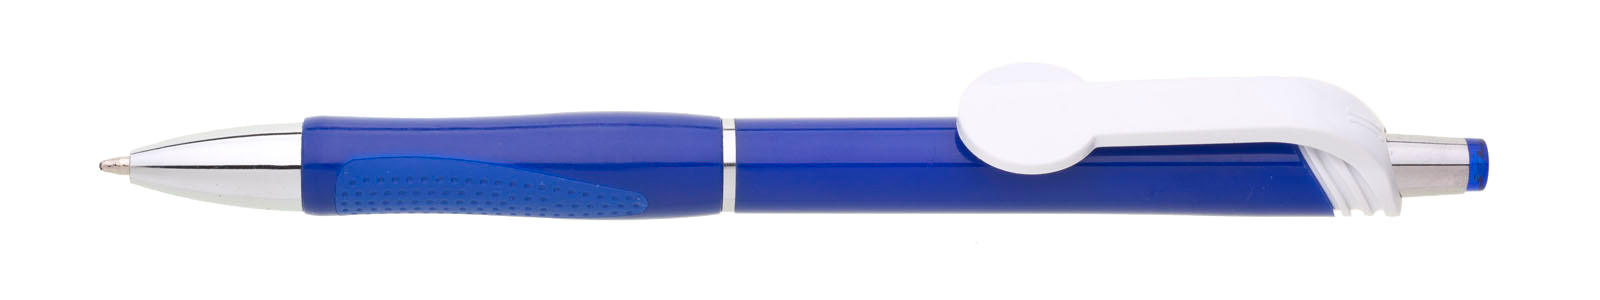 Propiska plast COLO plnobarevná, modrá